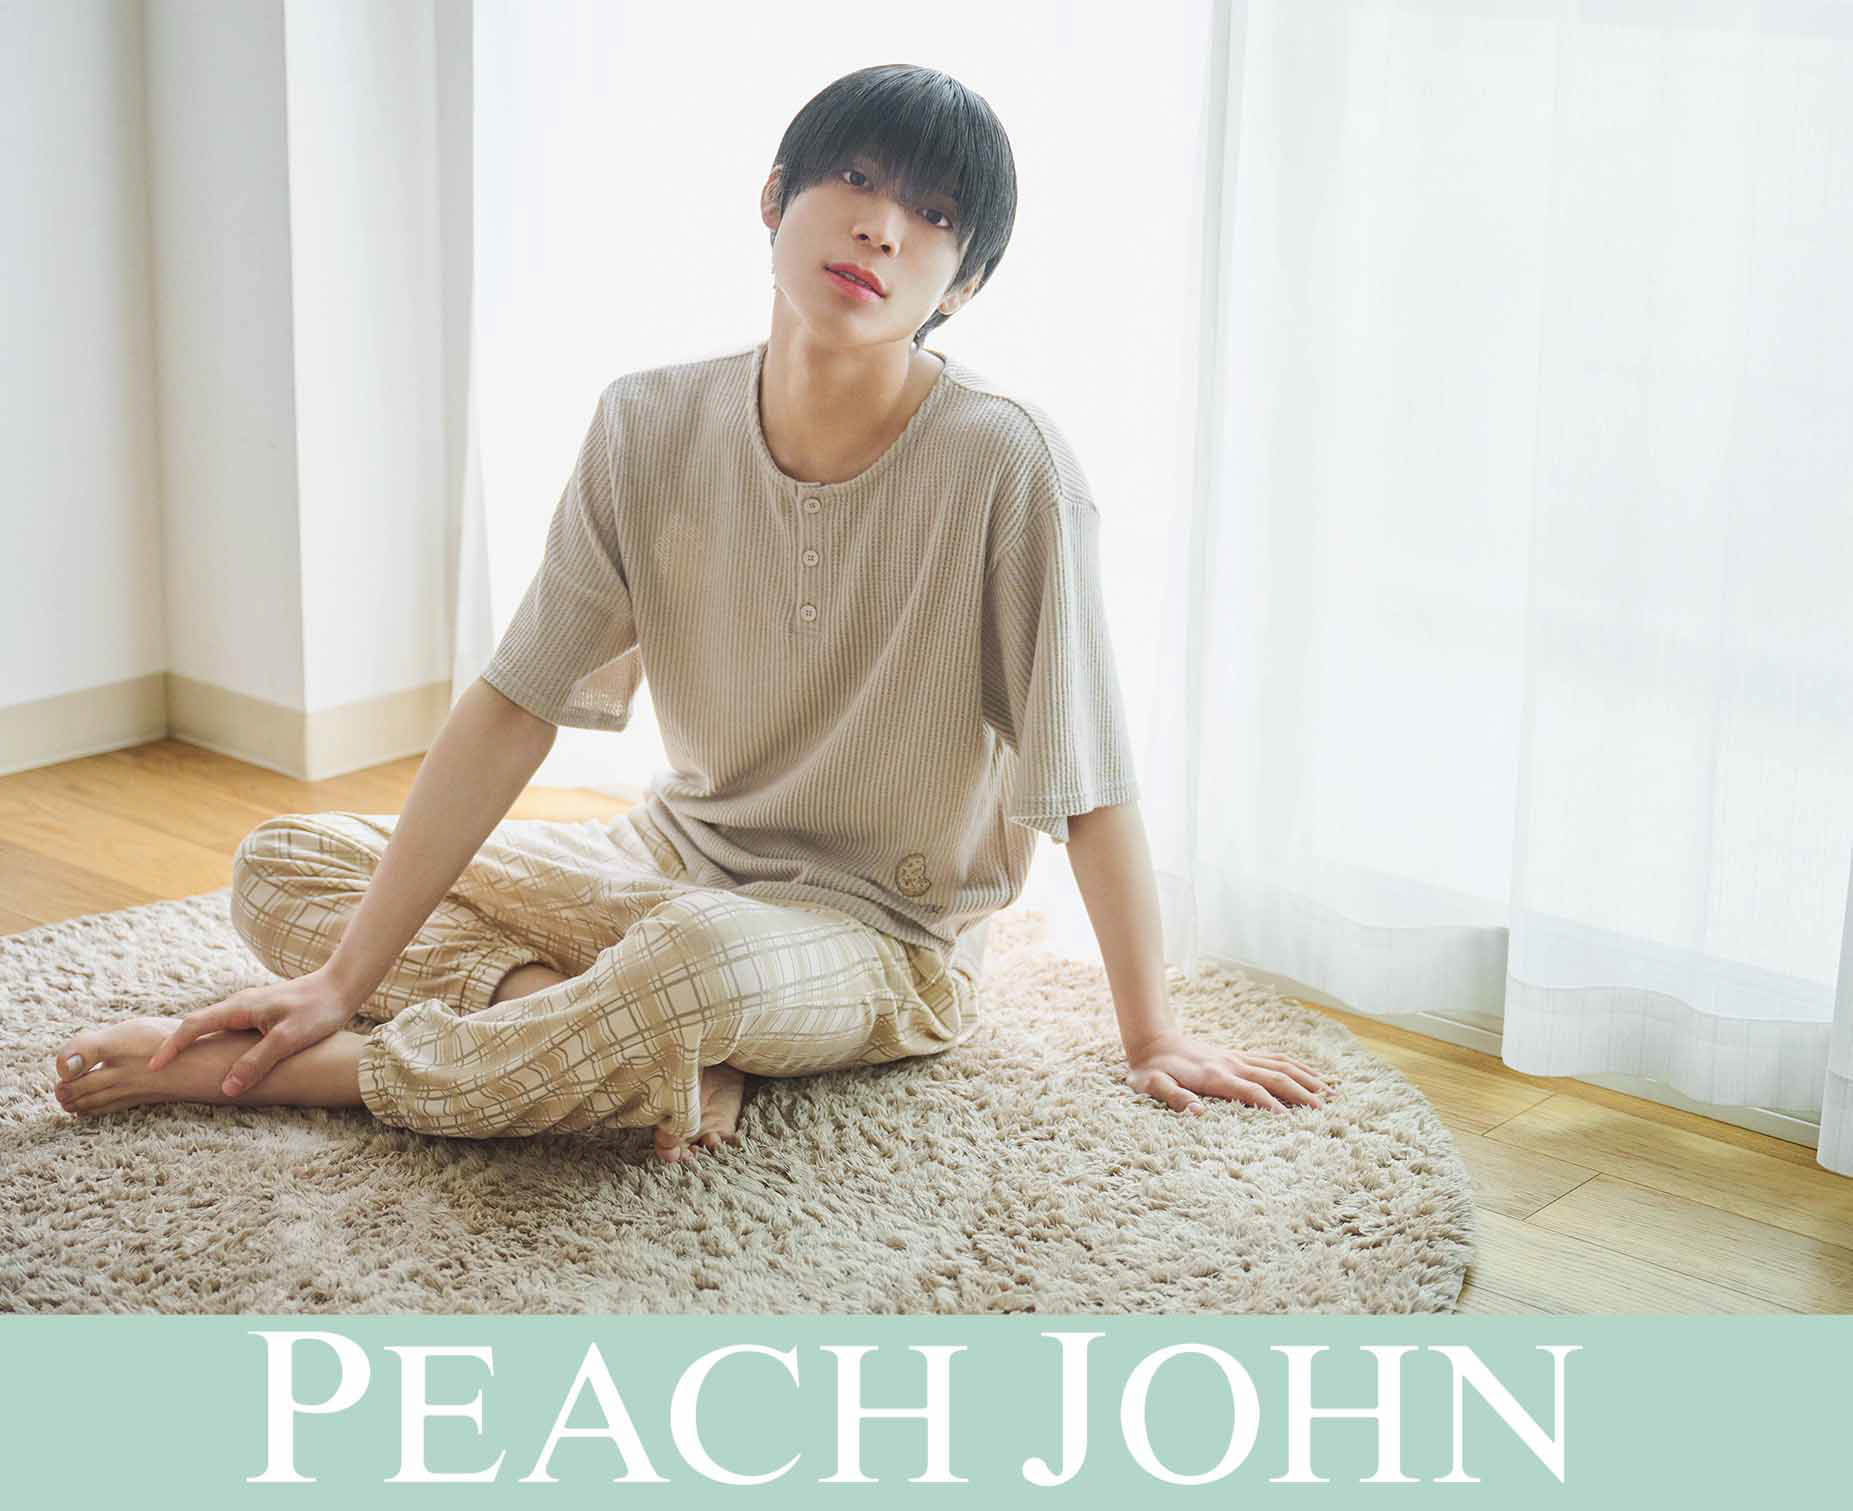 PEACH JOHN 恋するルームウェア 松島聡 ポストカード パジャマ 部屋着 SexyZone ピーチジョン コラボ - レディースファッション